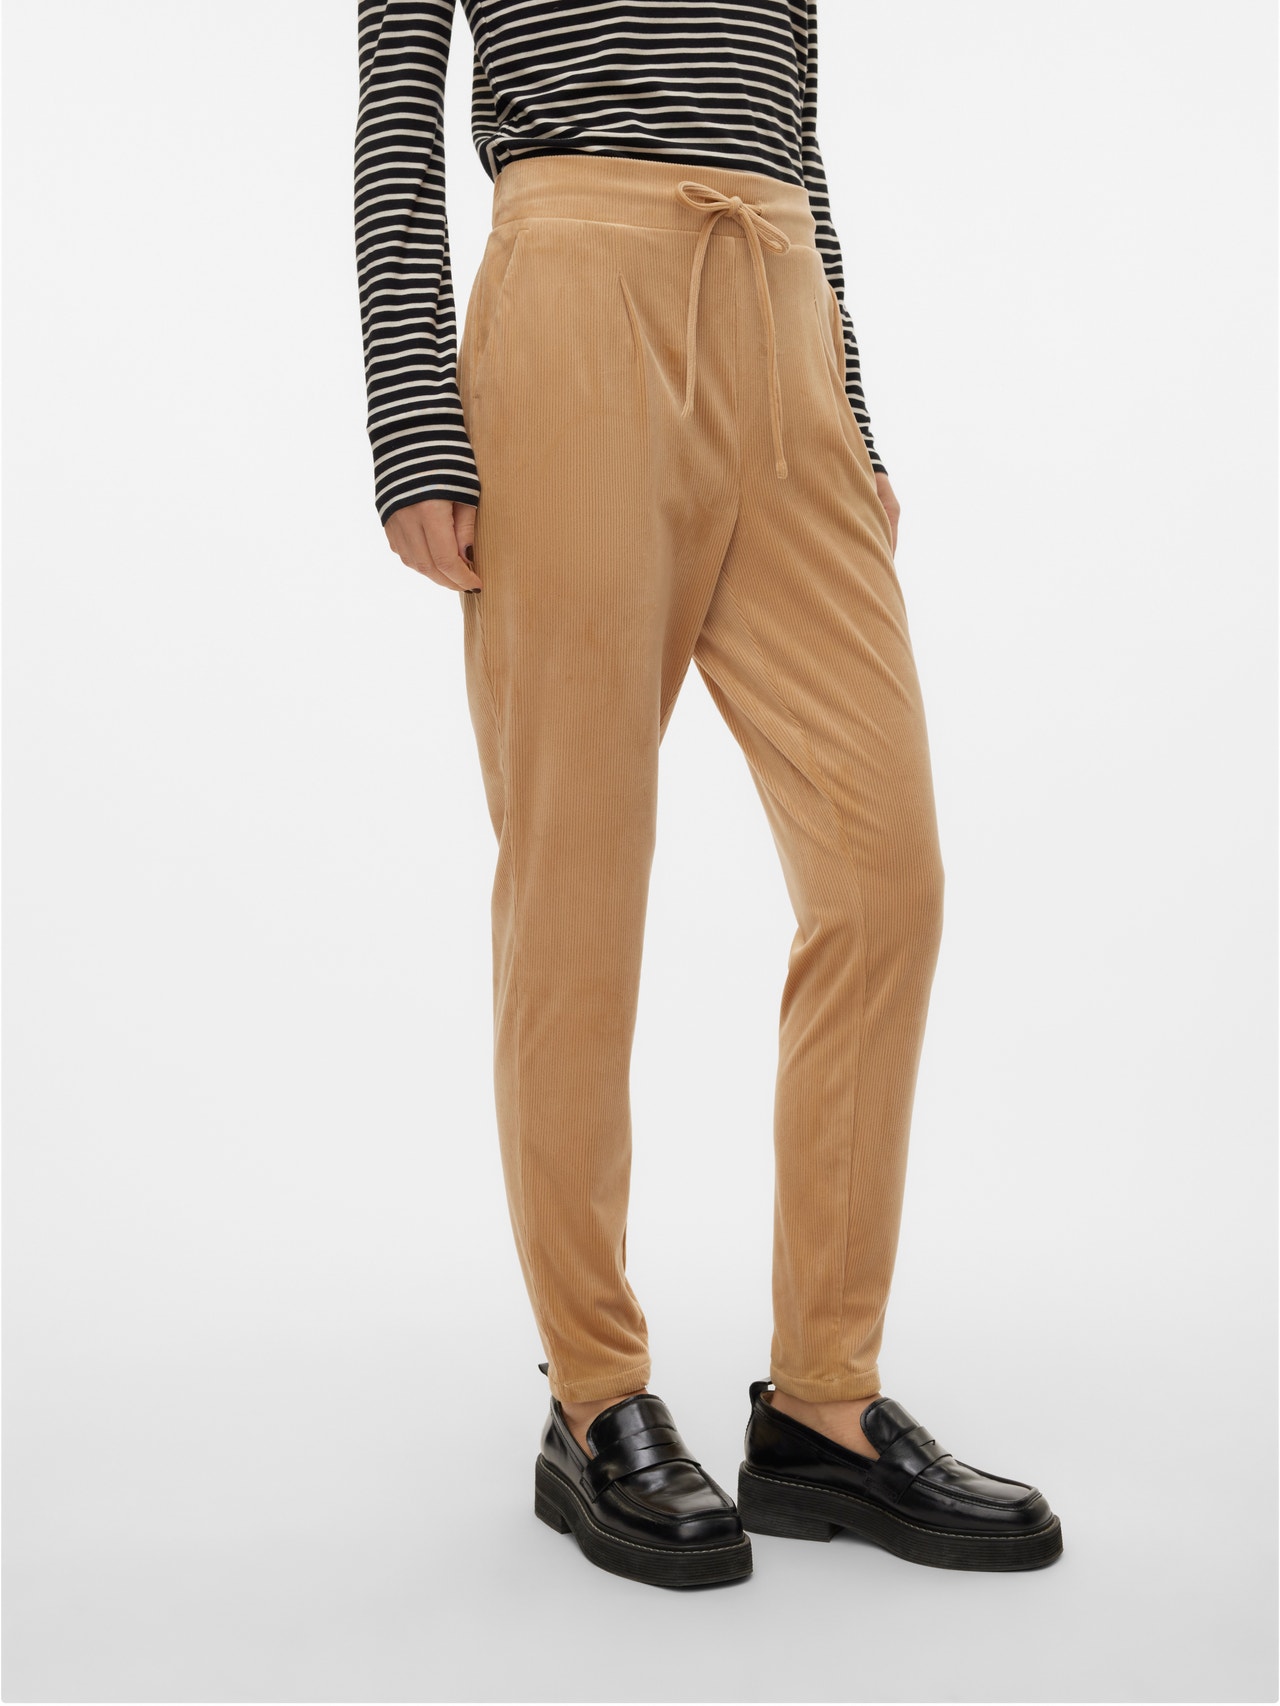 Vero Moda VMLEA Pantalones -Nomad - 10319706